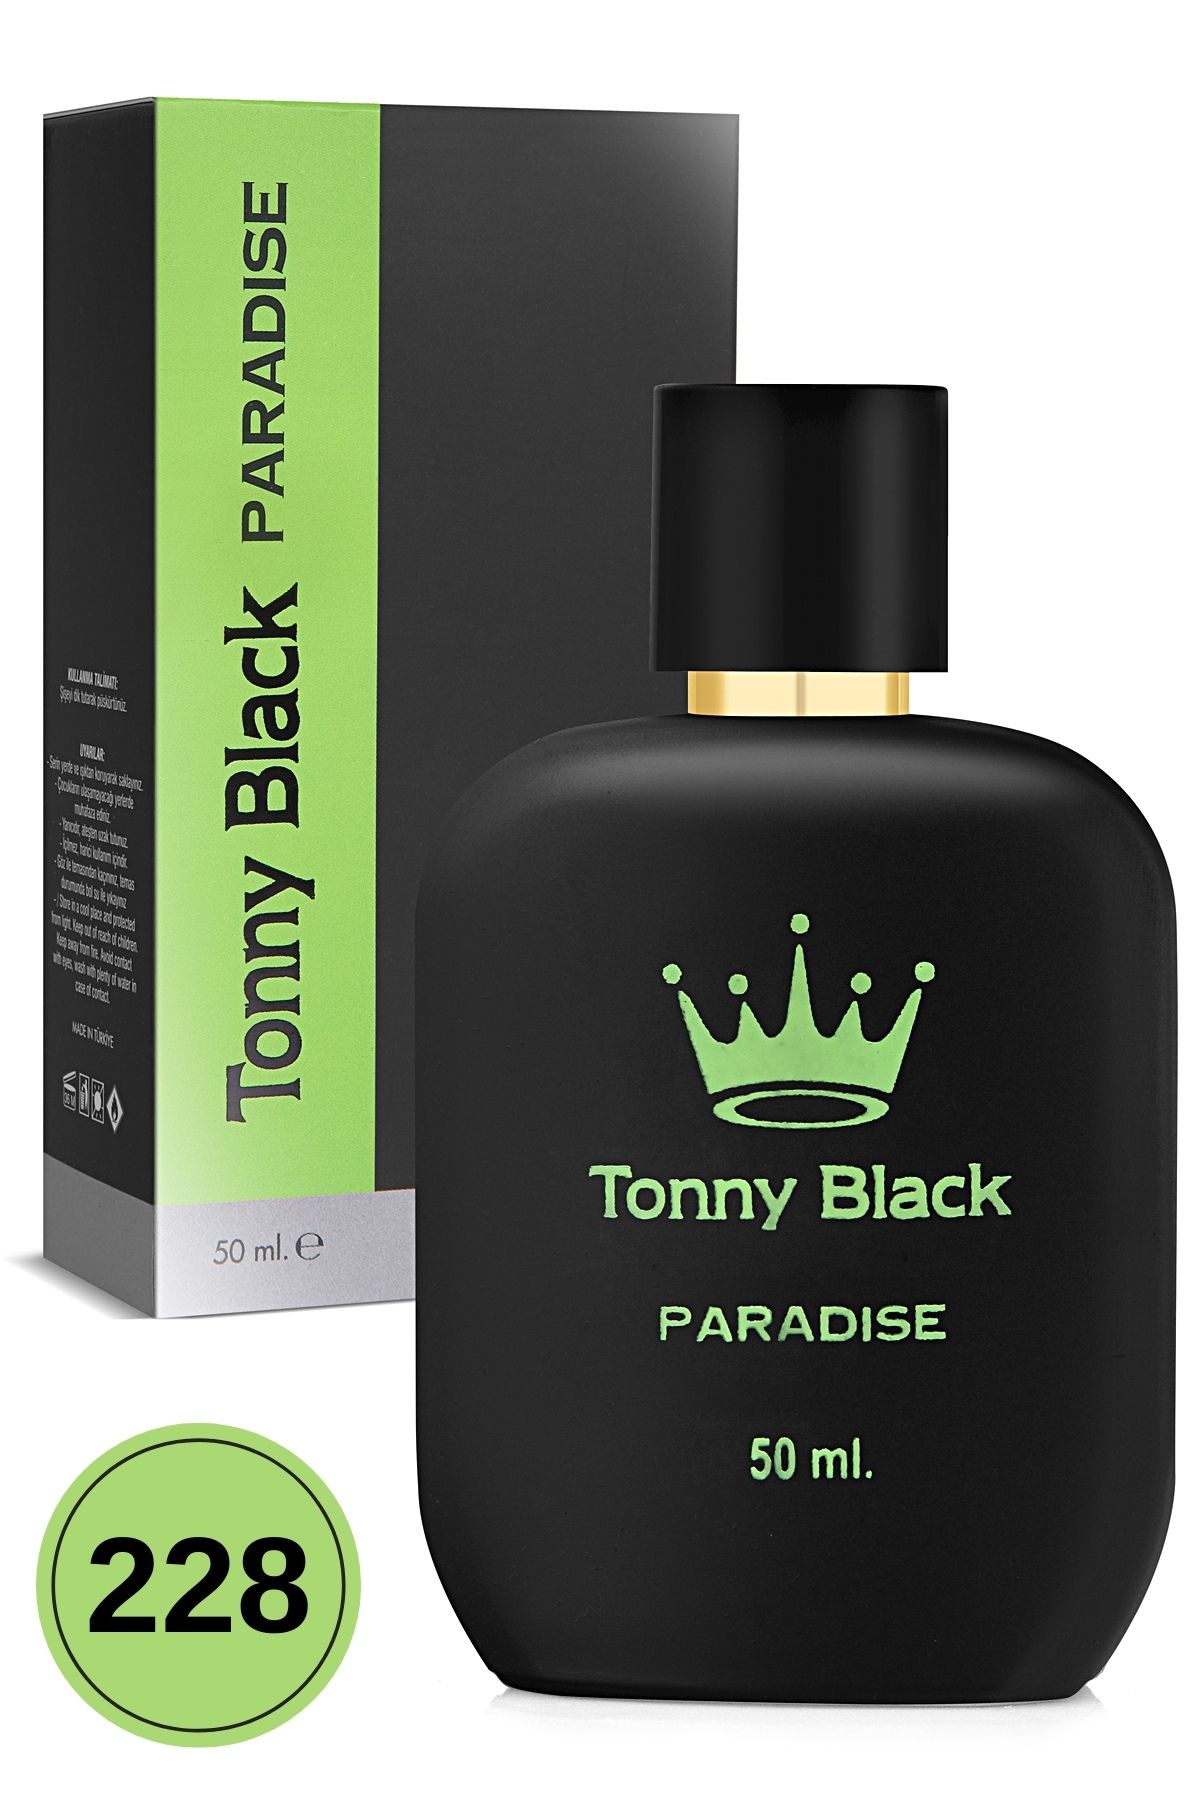 Tonny Black Orijinal Kadın 228 Özel Seri Uzun Süre Kalıcı Etkili Paradise Özel Serisi Lüks Kadın Parfüm 50ml